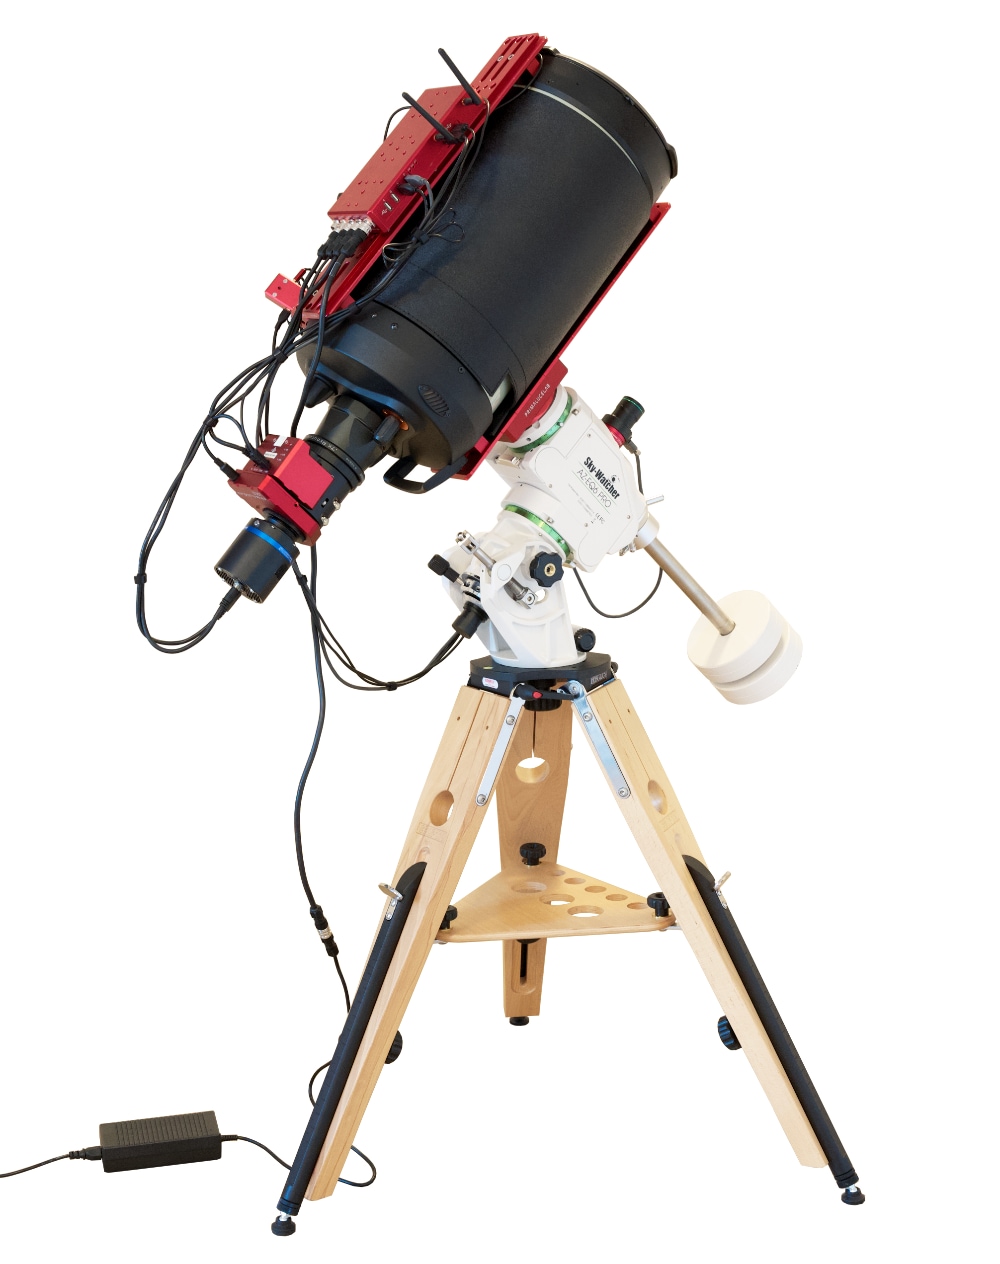 EAGLE si spegne improvvisamente durante l’uso: un telescopio alimentato da EAGLE collegato all'alimentatore 12,8V